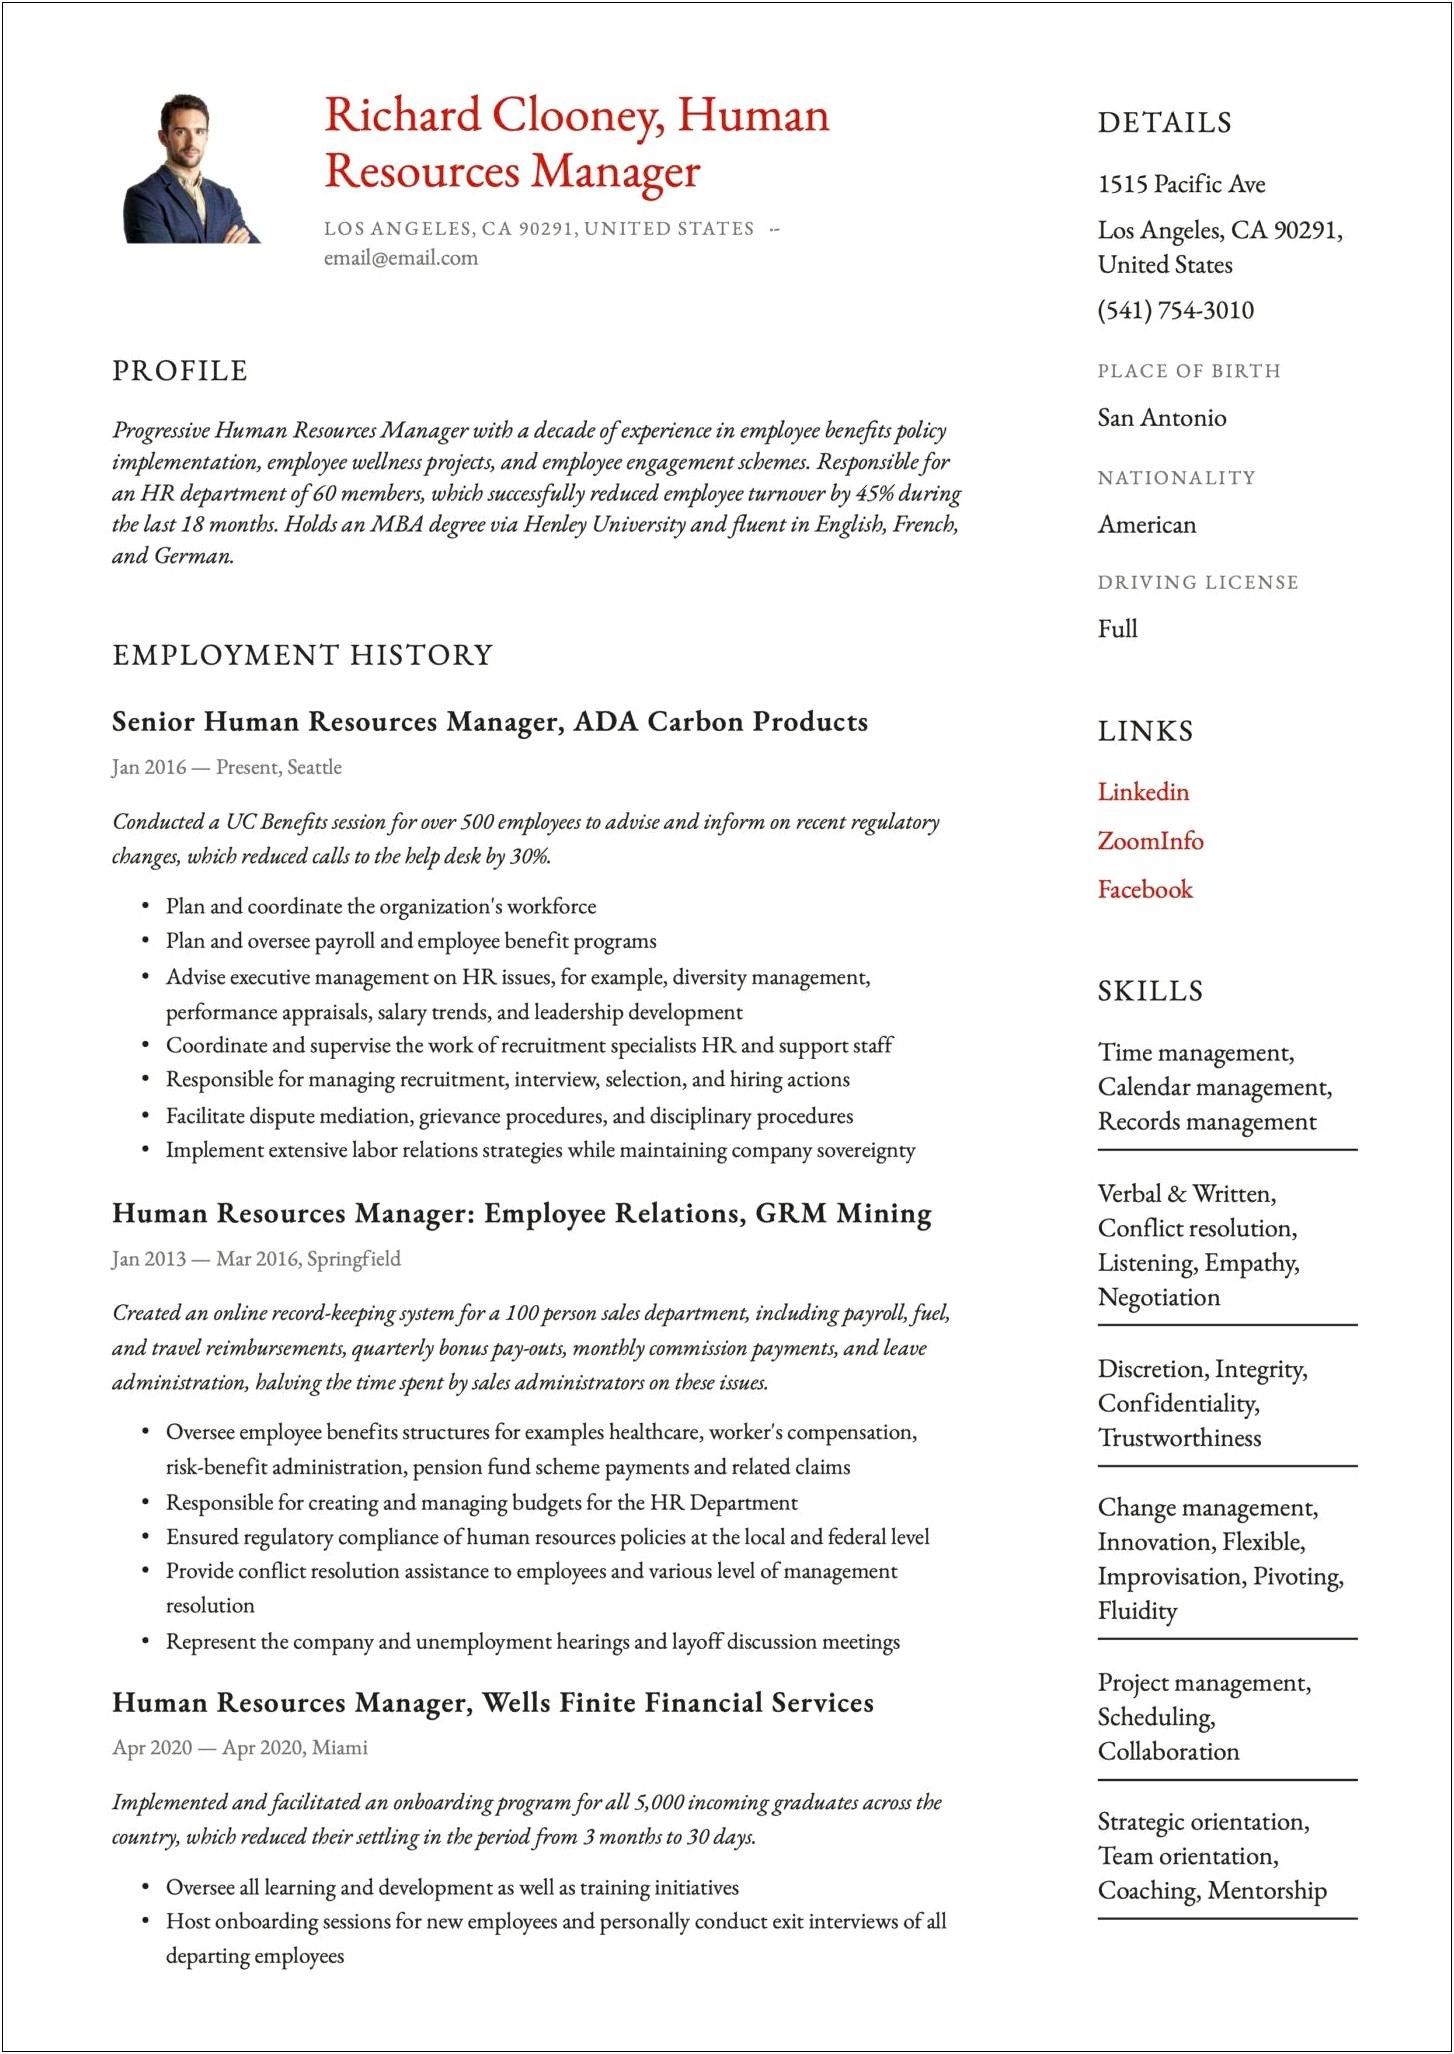 Resume Keywords For Human Resource Management